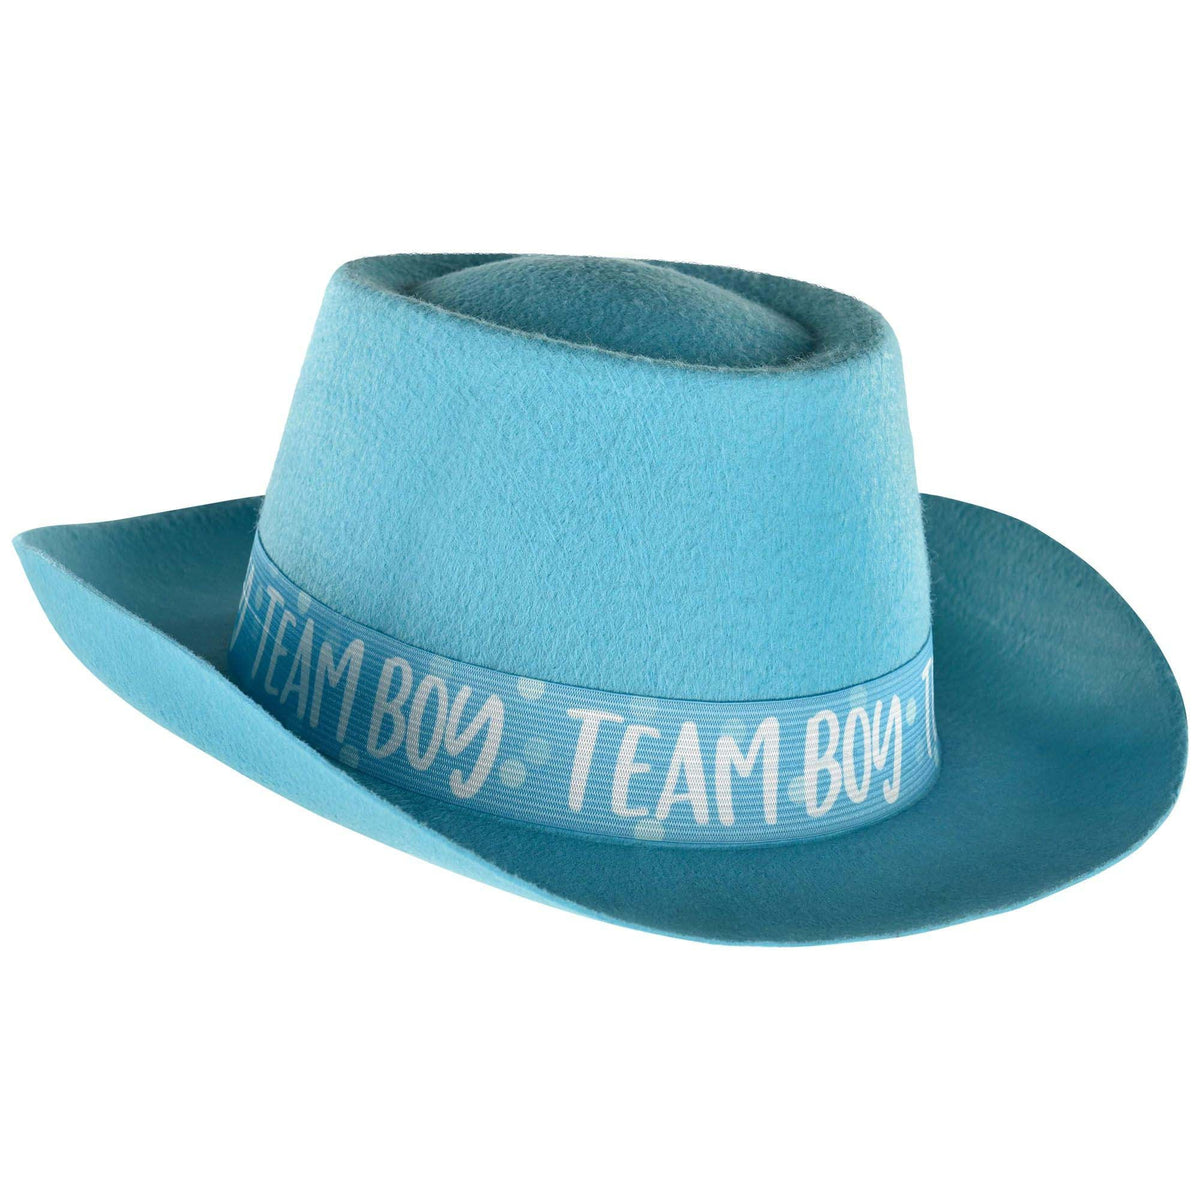 AMSCAN CA Baby Shower Gender Reveal Blue Felt Hat, 1 Count 192937381670